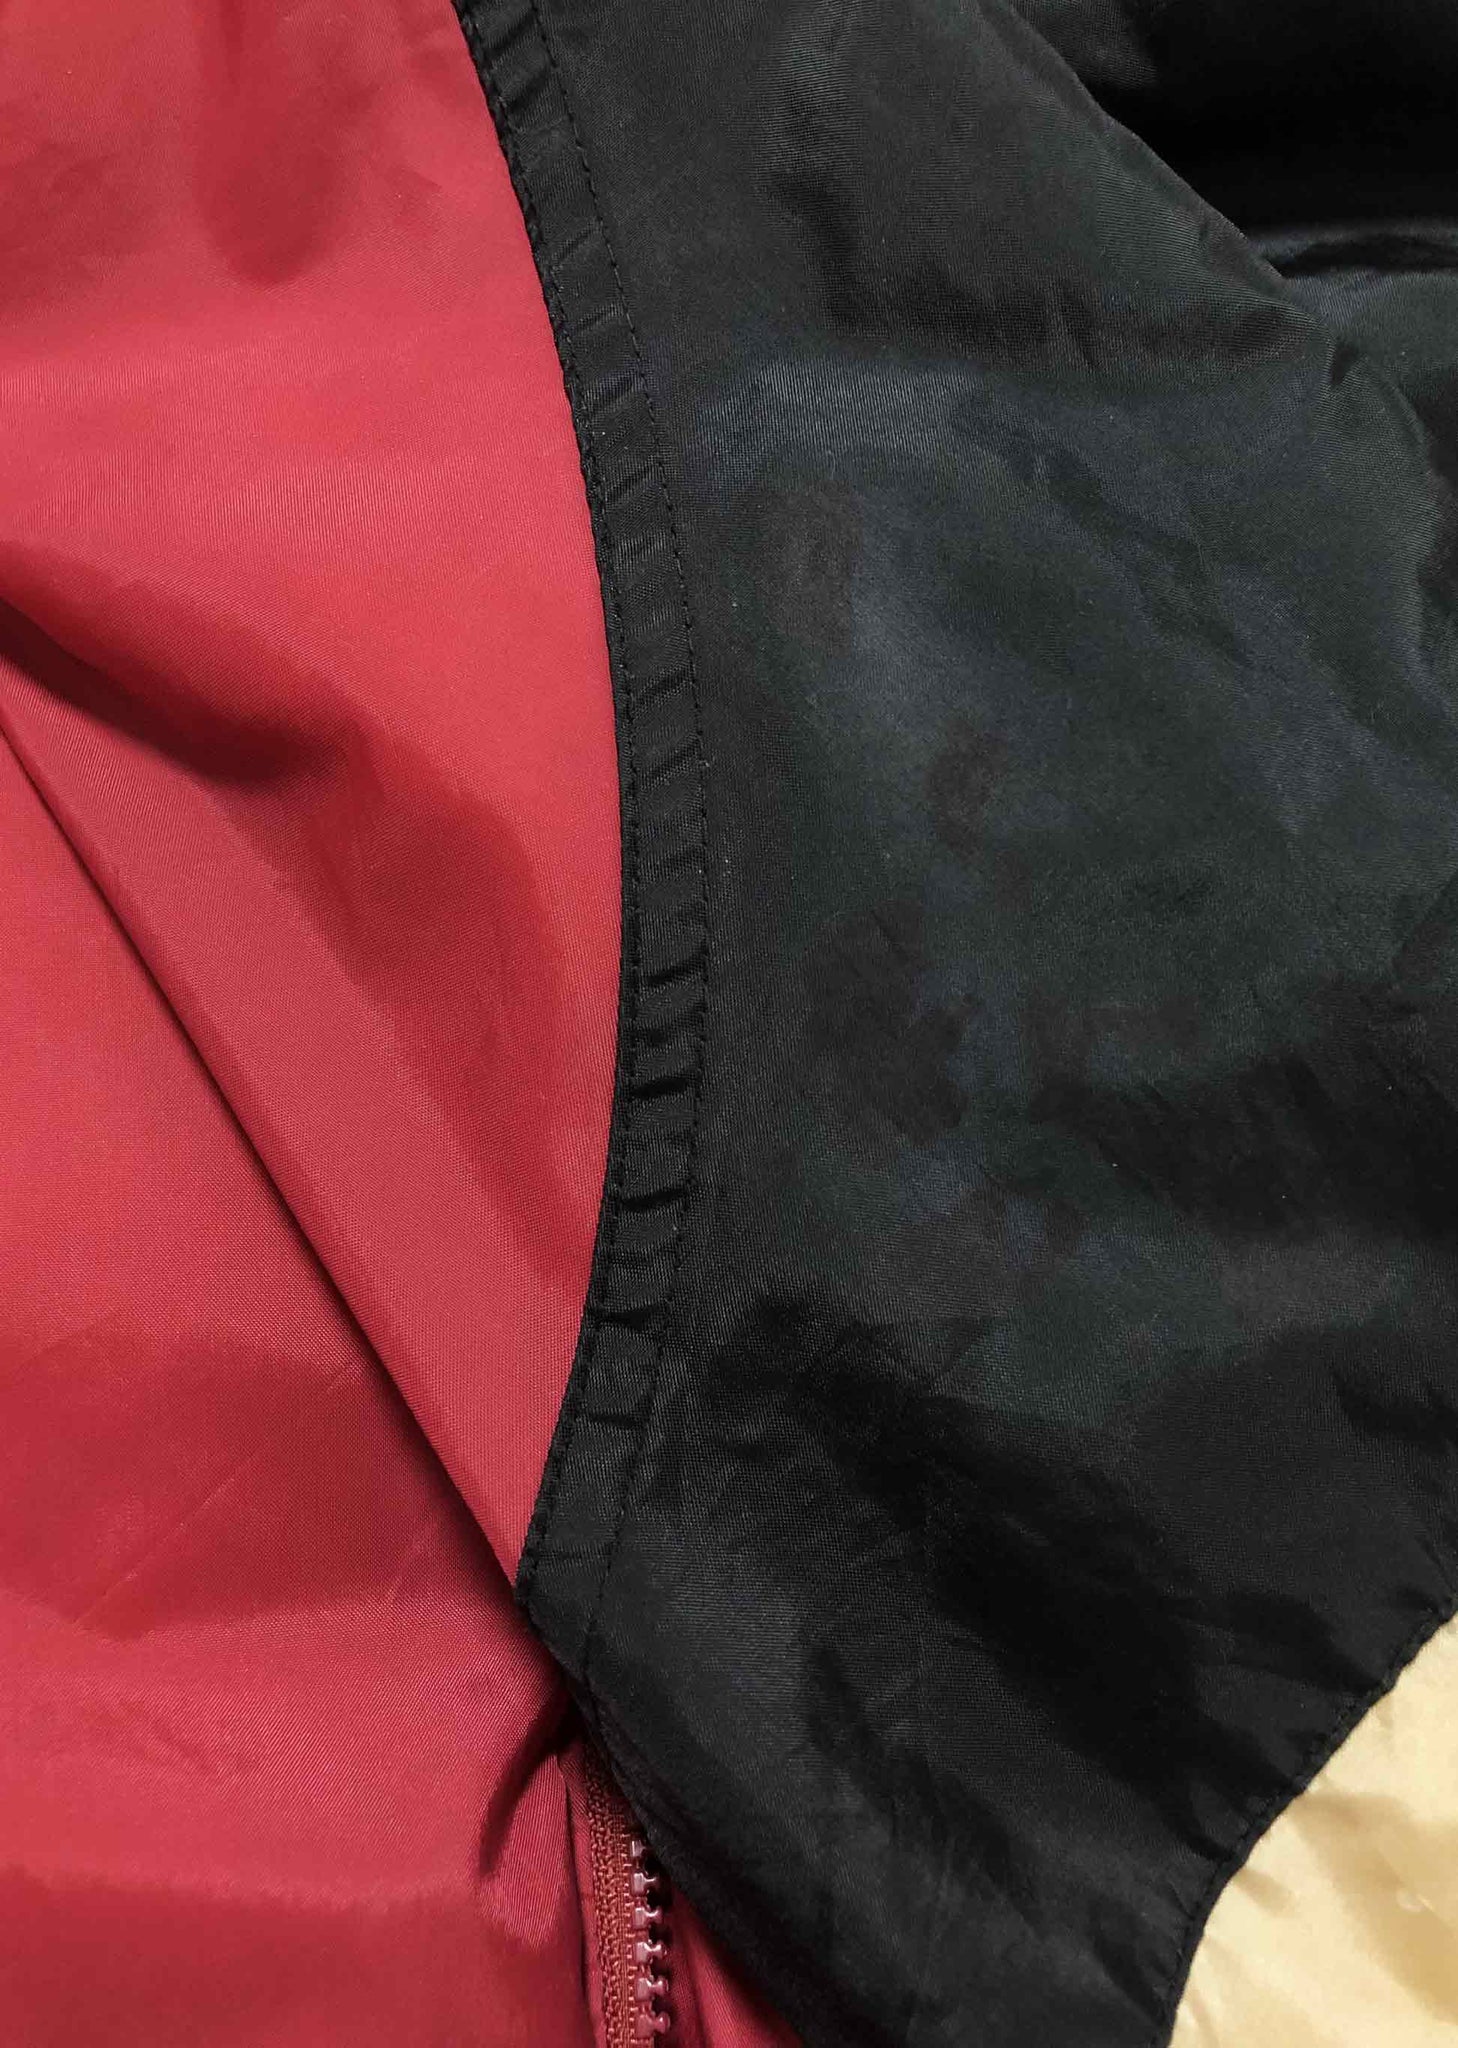 NFL San Francisco 49ers Reversible Jacket Black/Red (L) – Chop